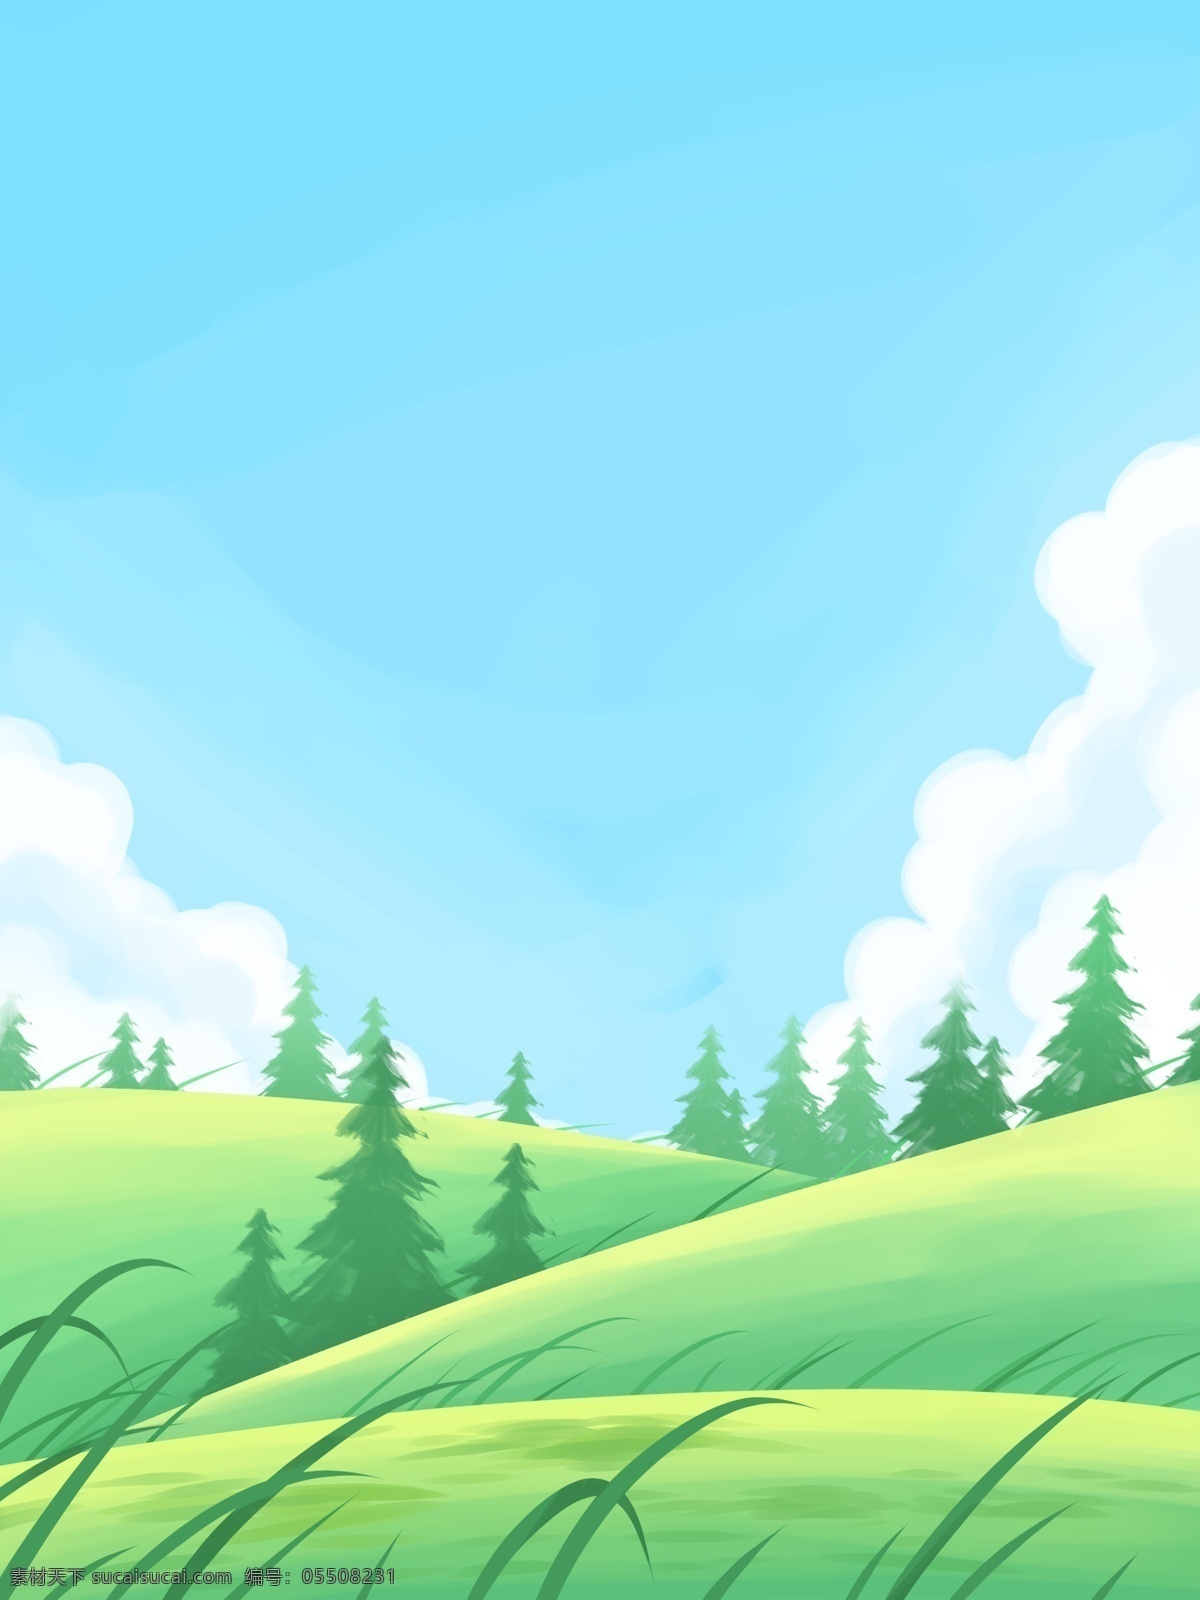 手绘 清新 草地 树林 背景 夏天 绿色 蓝天 白云 彩绘背景 背景展板 特邀背景 背景展板图 背景图